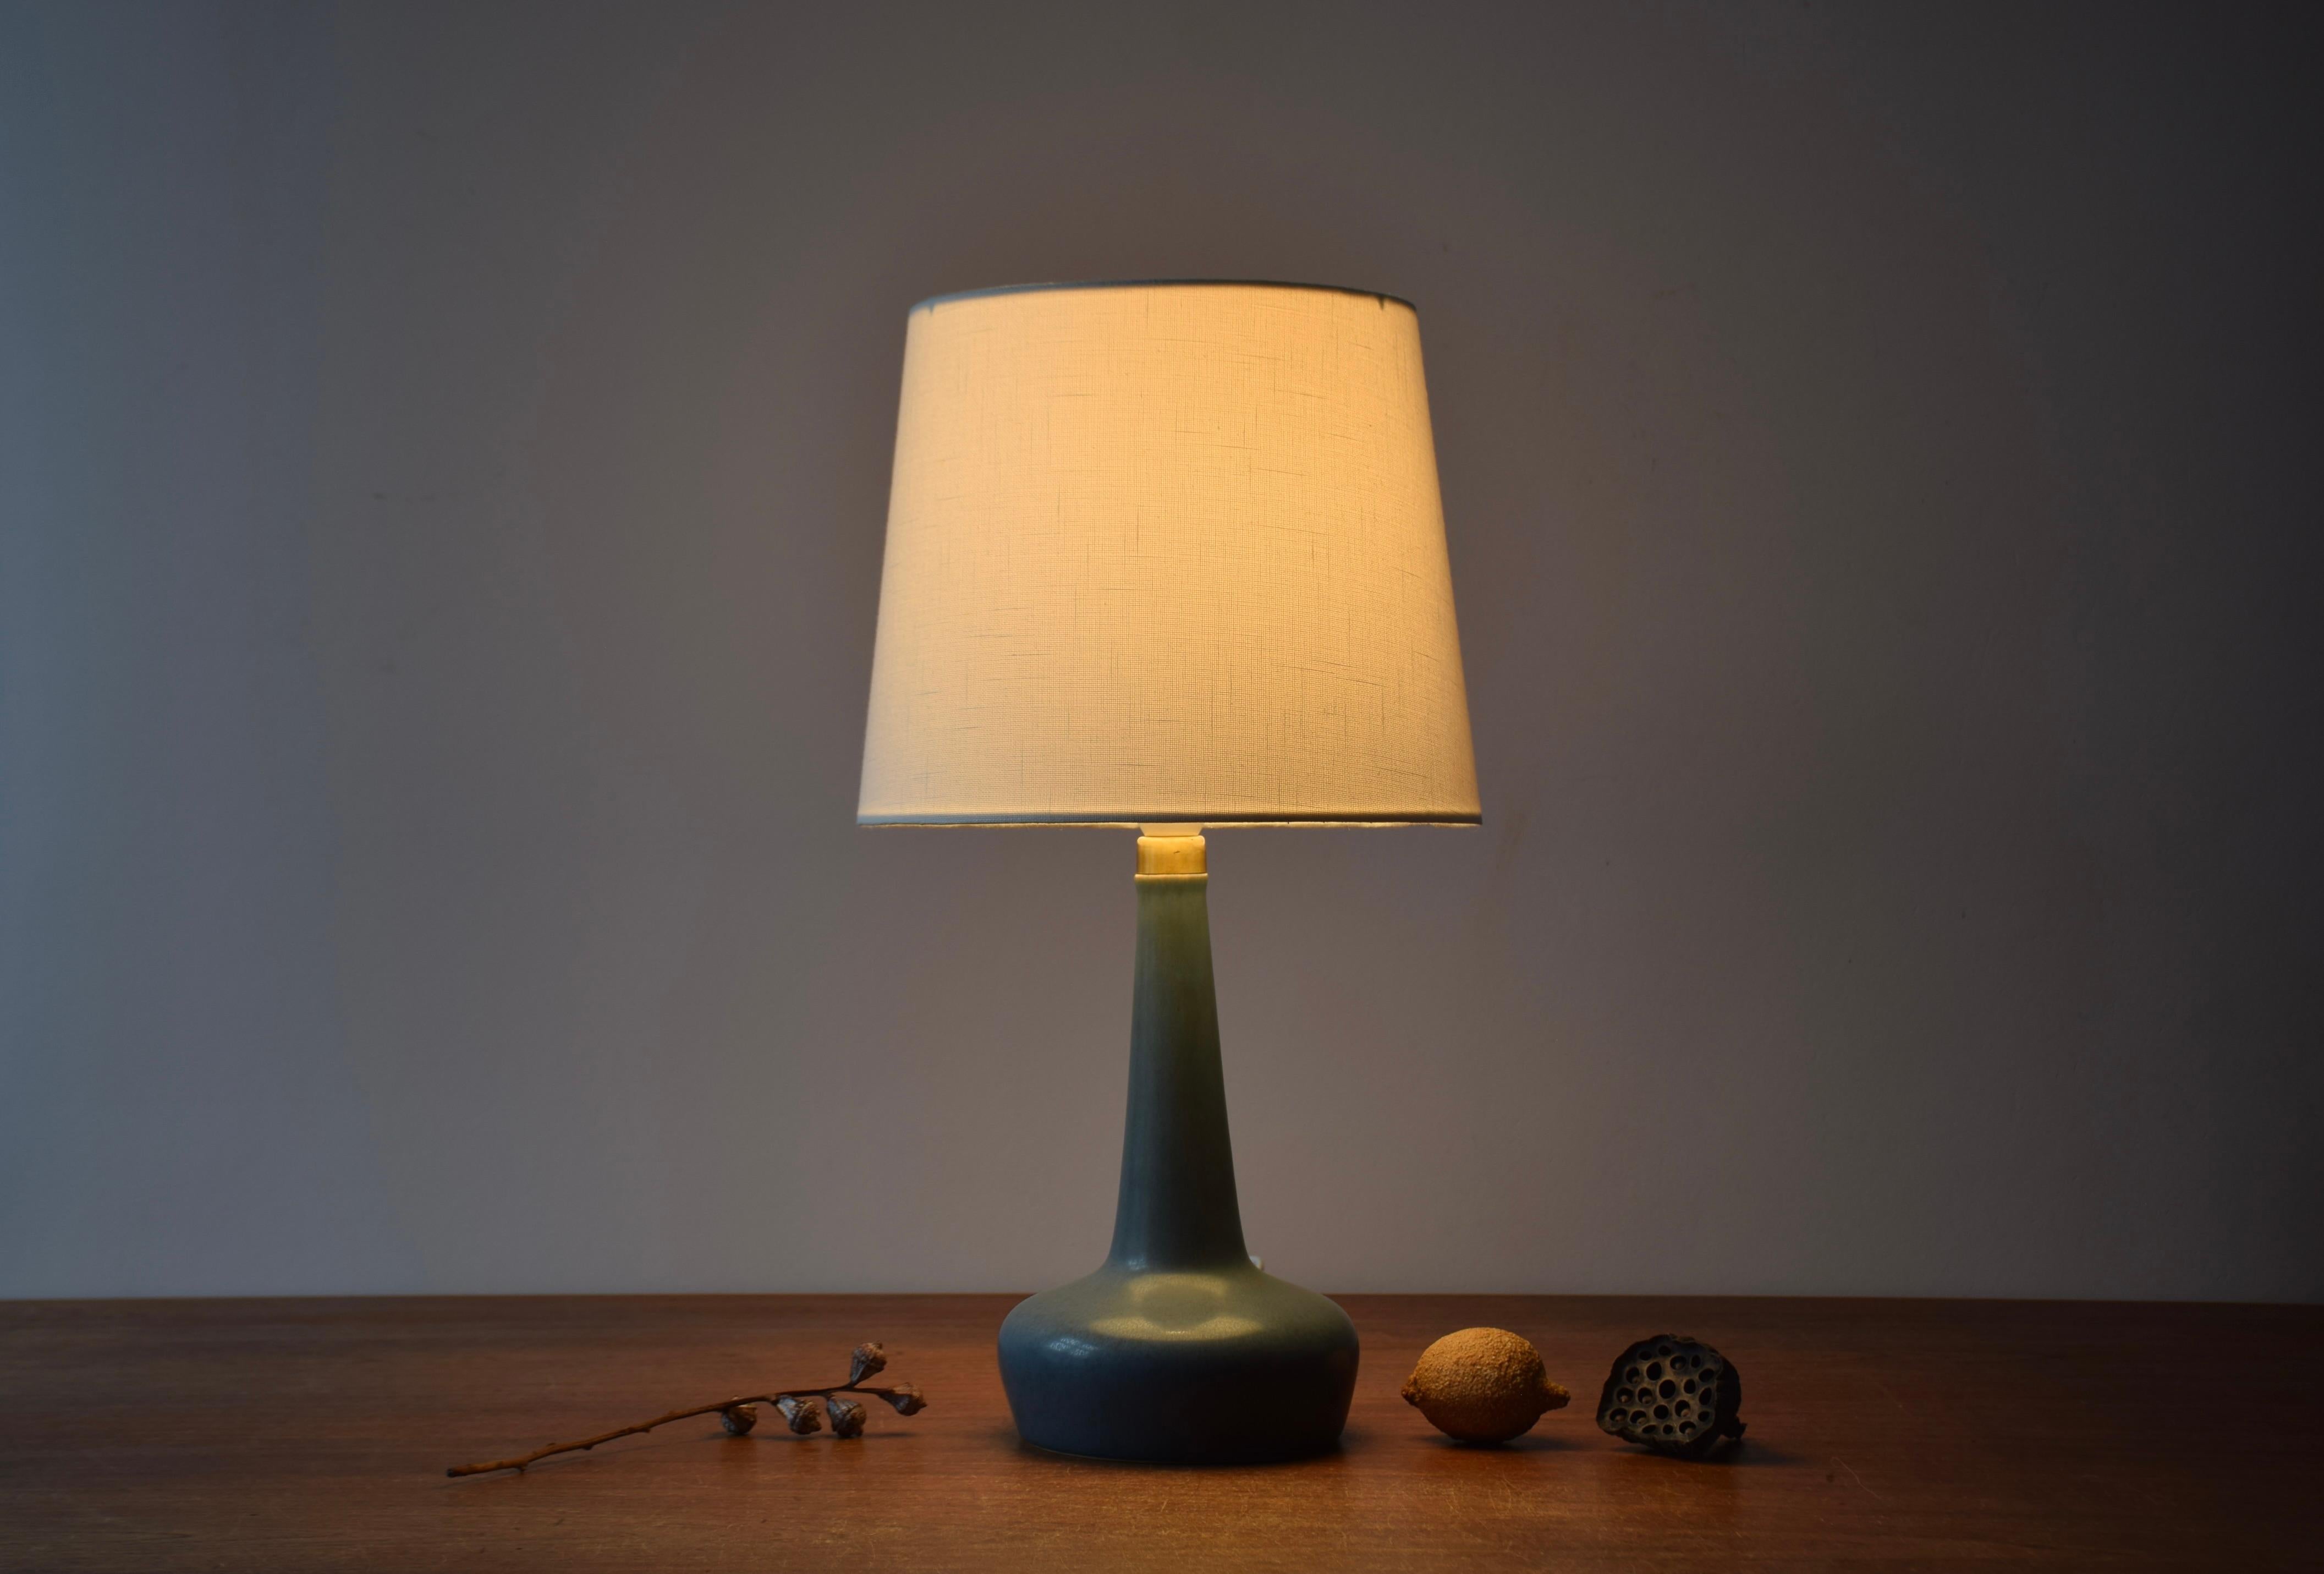 Lampe de table danoise du milieu du siècle Palshus / Le Klint avec une glaçure HaresFur bleue dépoussiérée contrastée par un plateau en laiton.

La lampe est conçue par Esben Klint et fabriquée dans le studio de céramique danois Palshus pour le